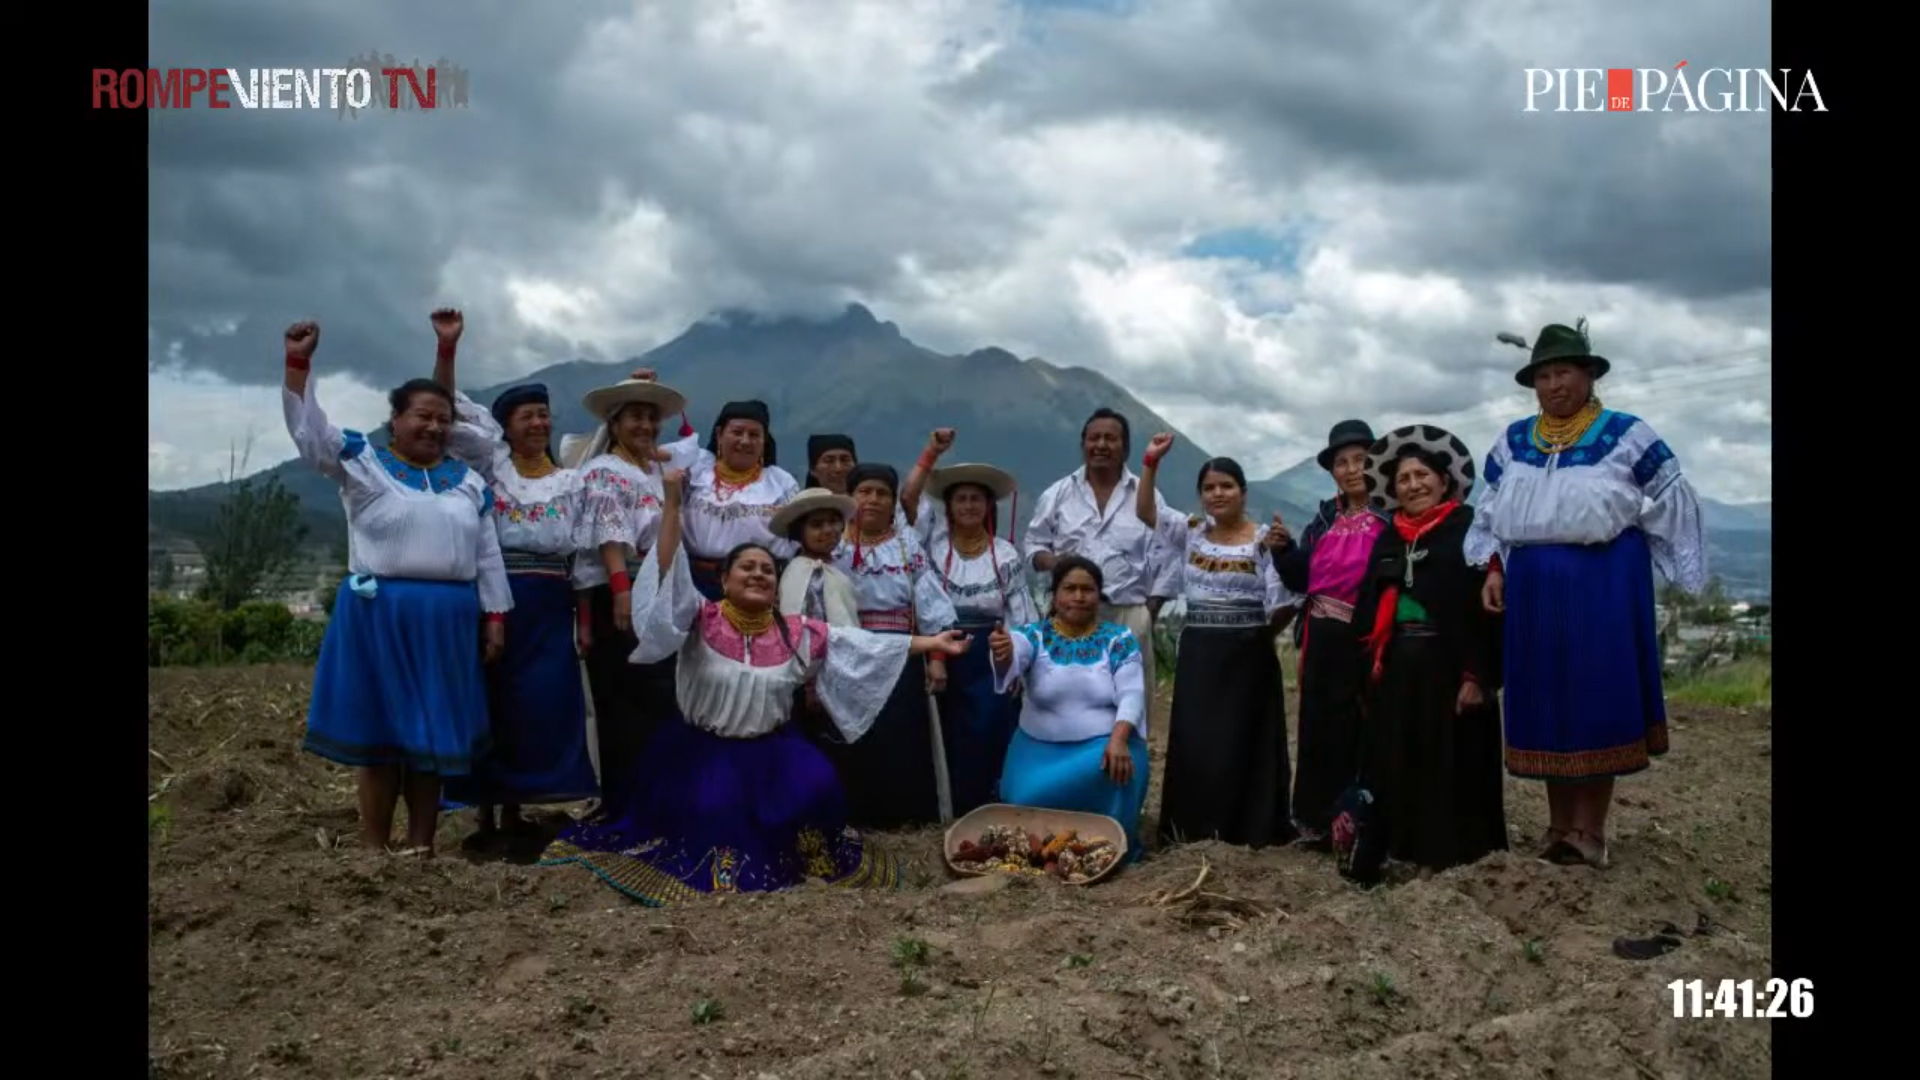 Guardianas de semillas: defensoras del conocimiento ancestral en Los Andes